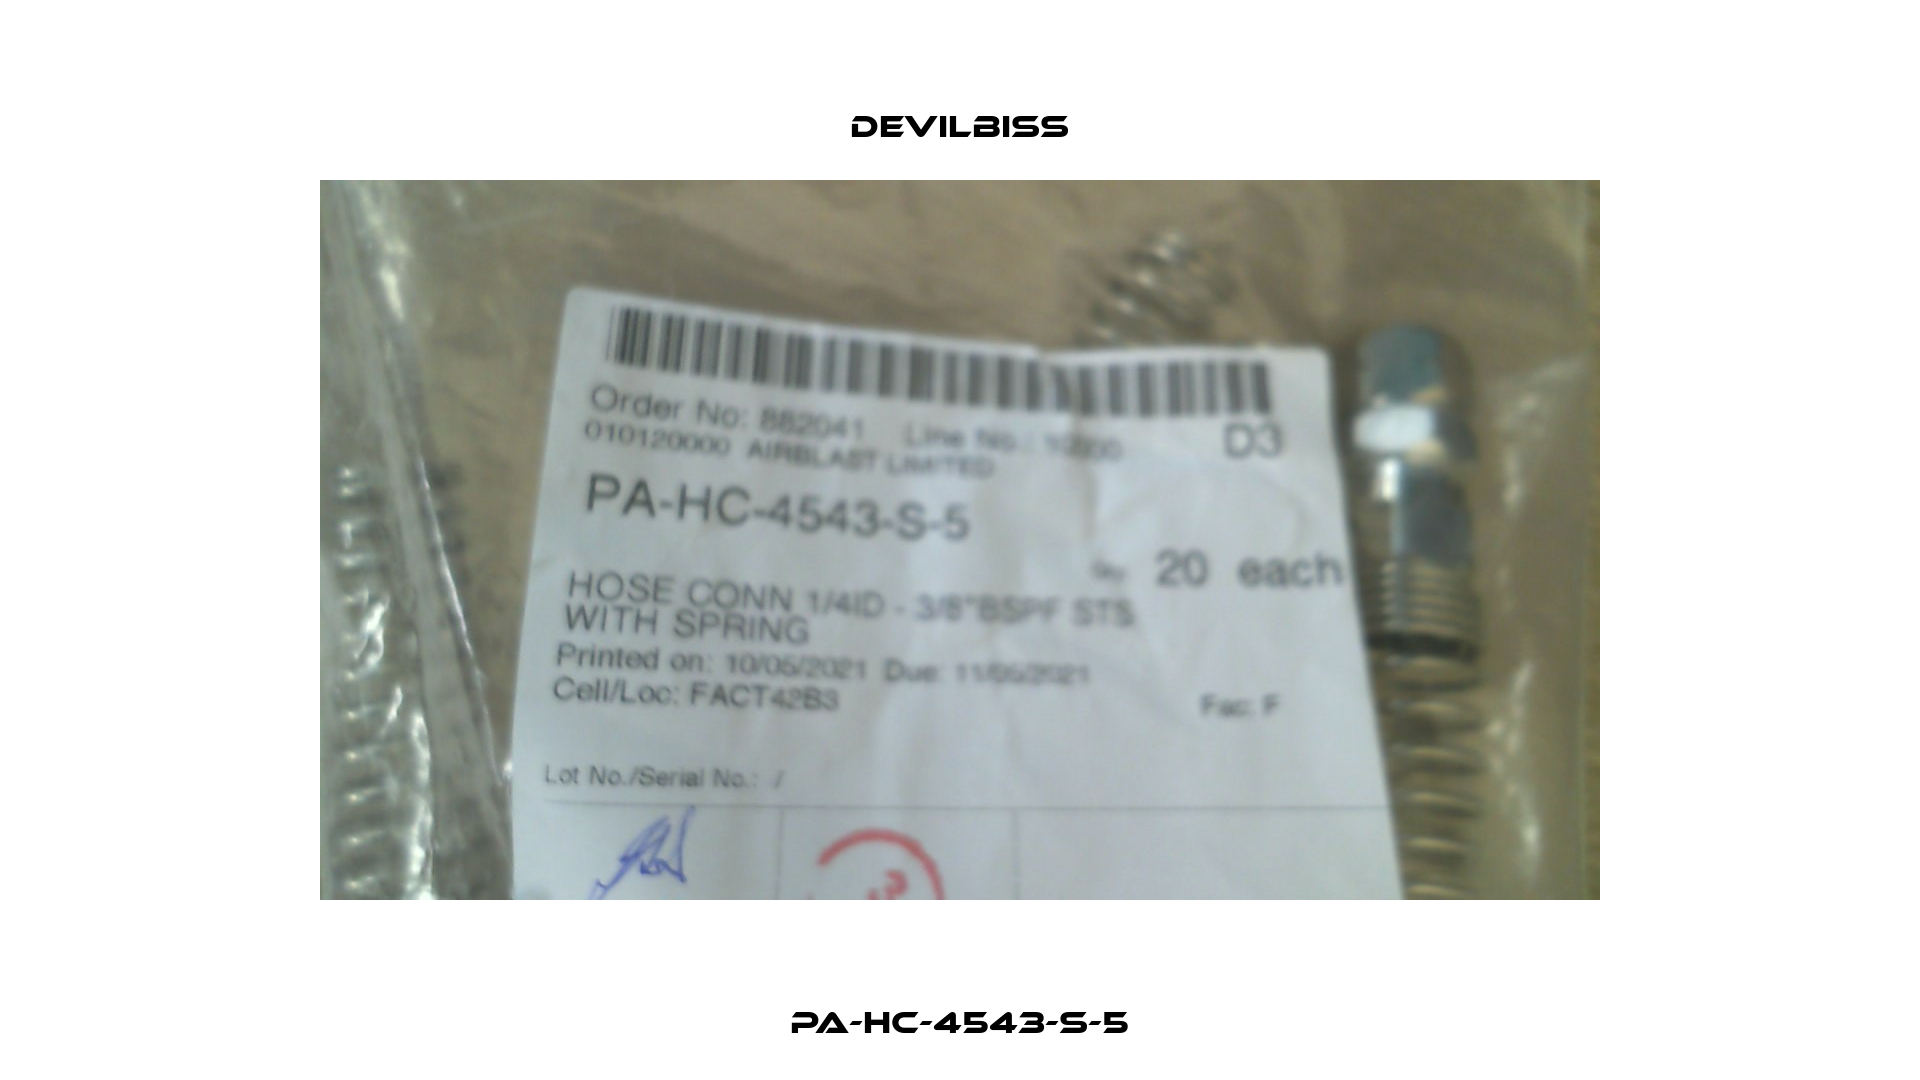 PA-HC-4543-S-5 Devilbiss